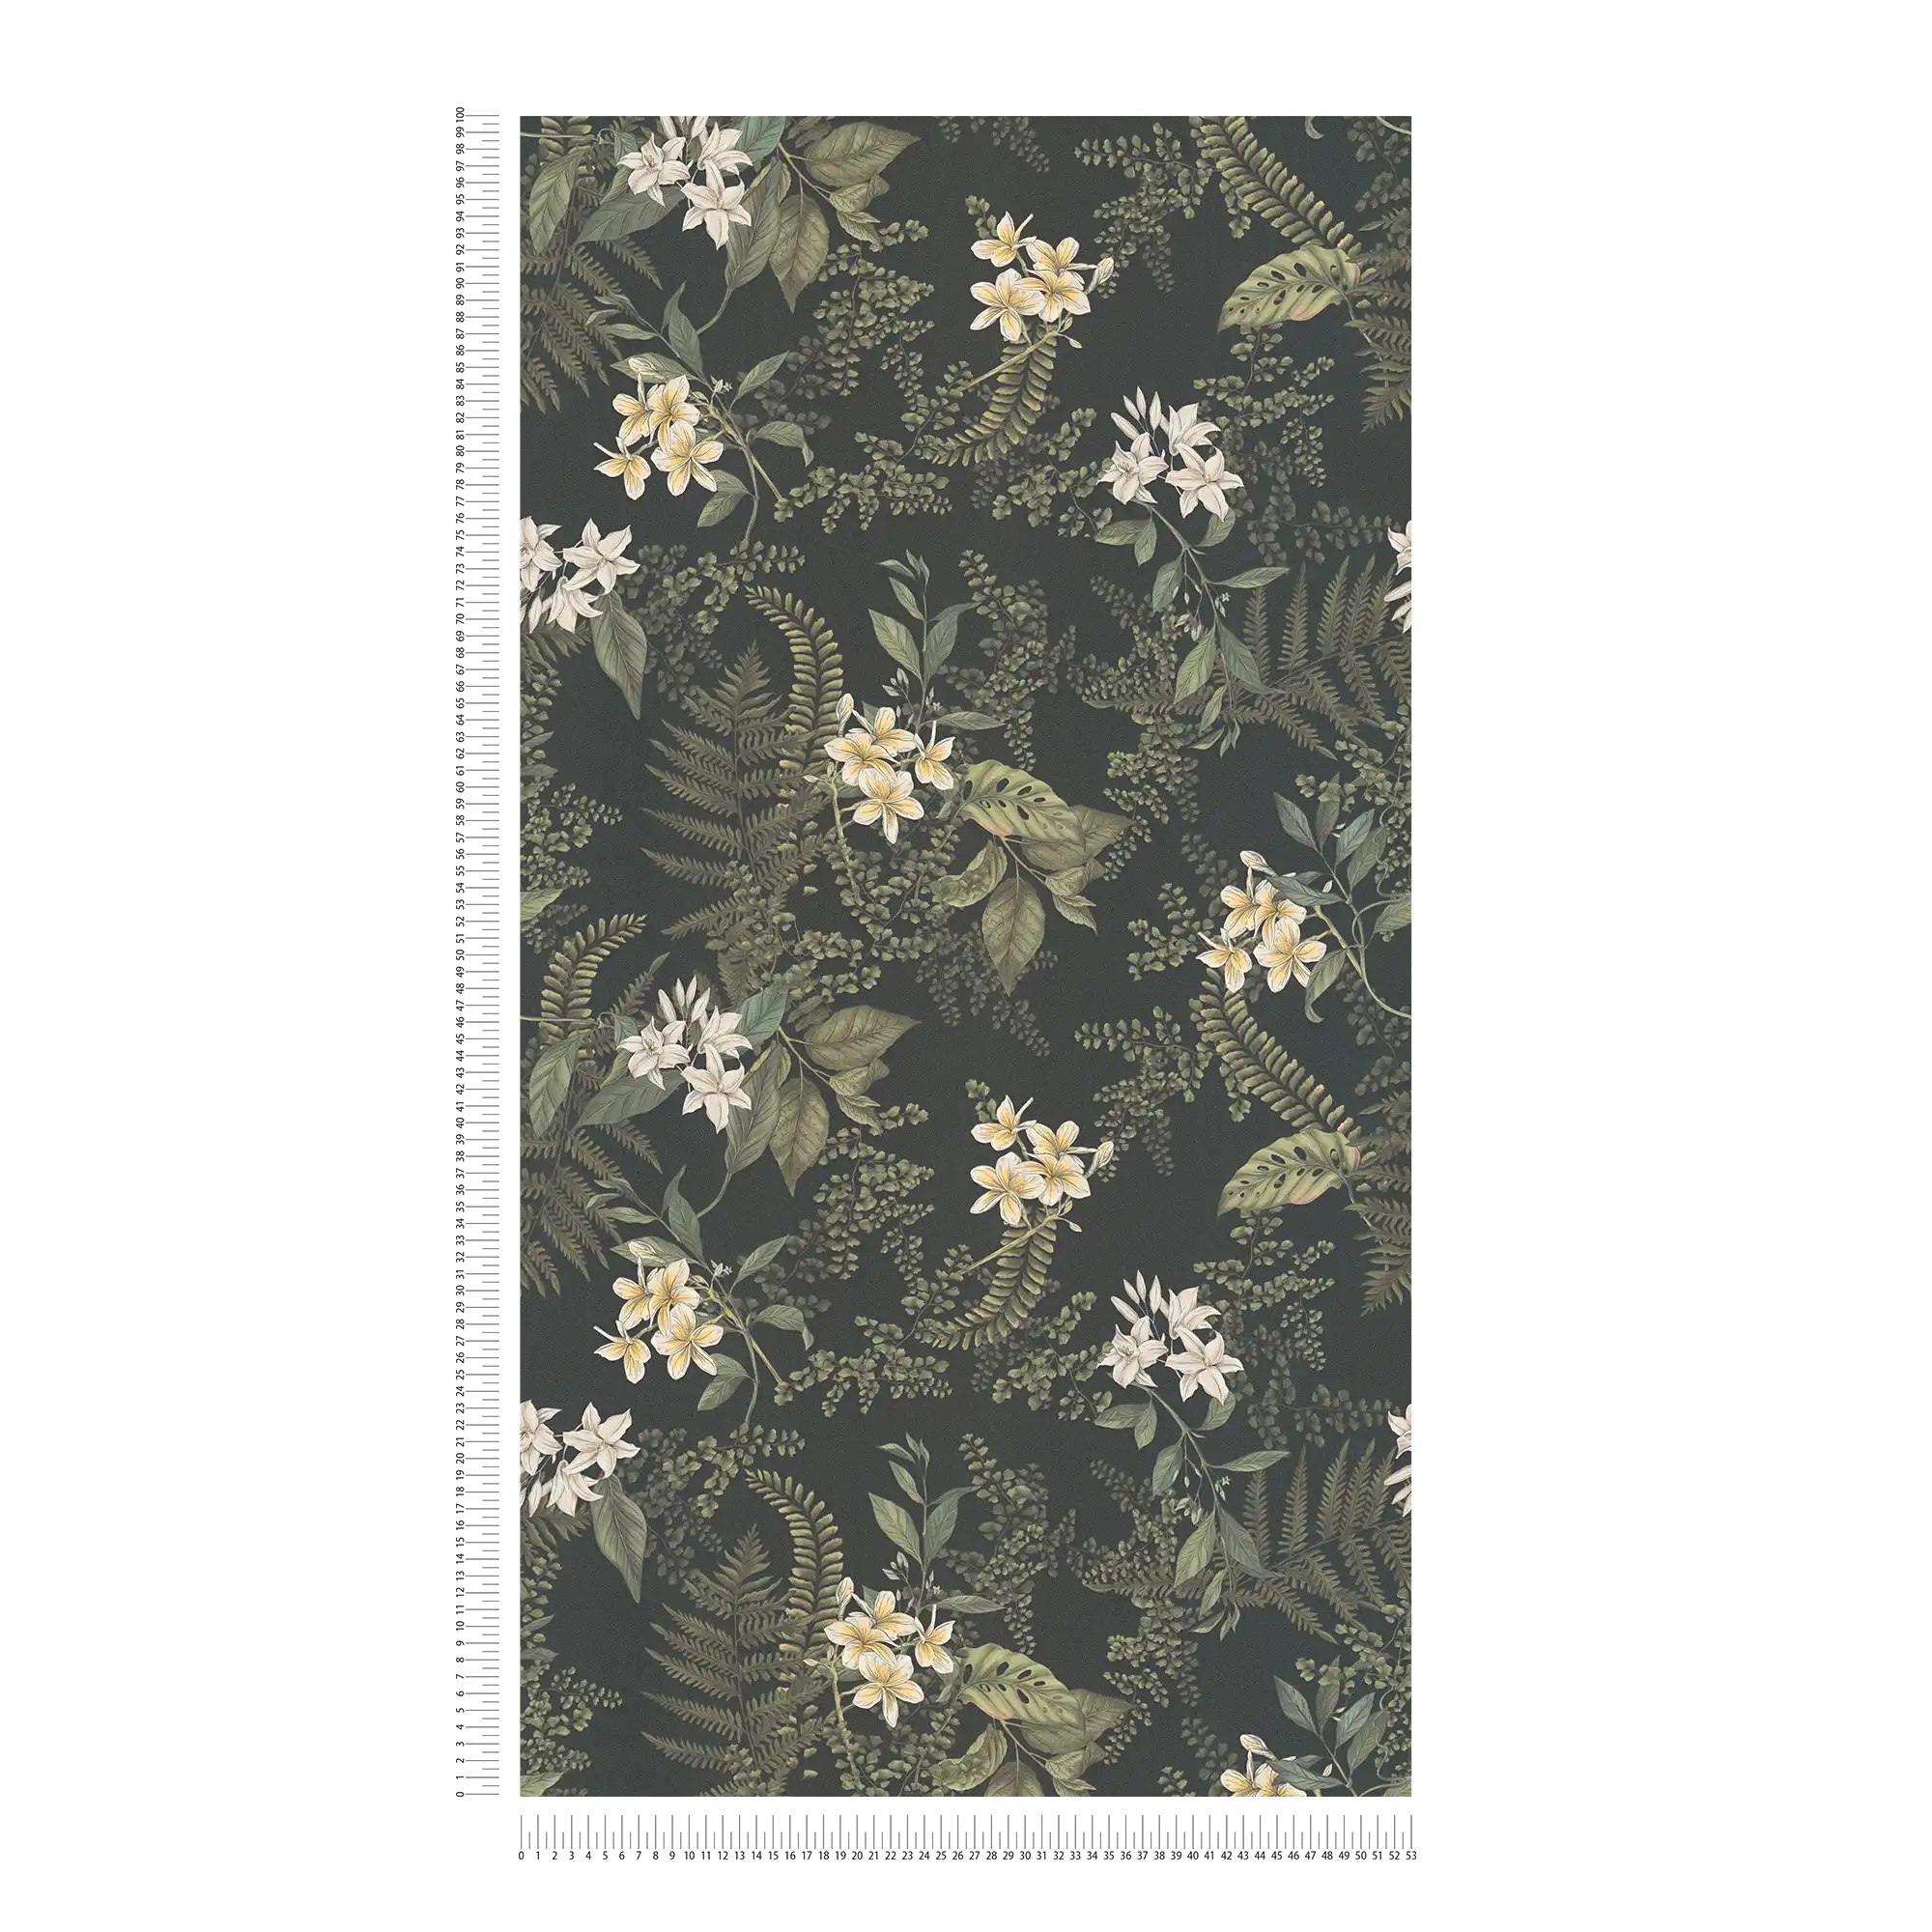             Modern behang met bloemen & grassen structuur mat - zwart, donkergroen, wit
        